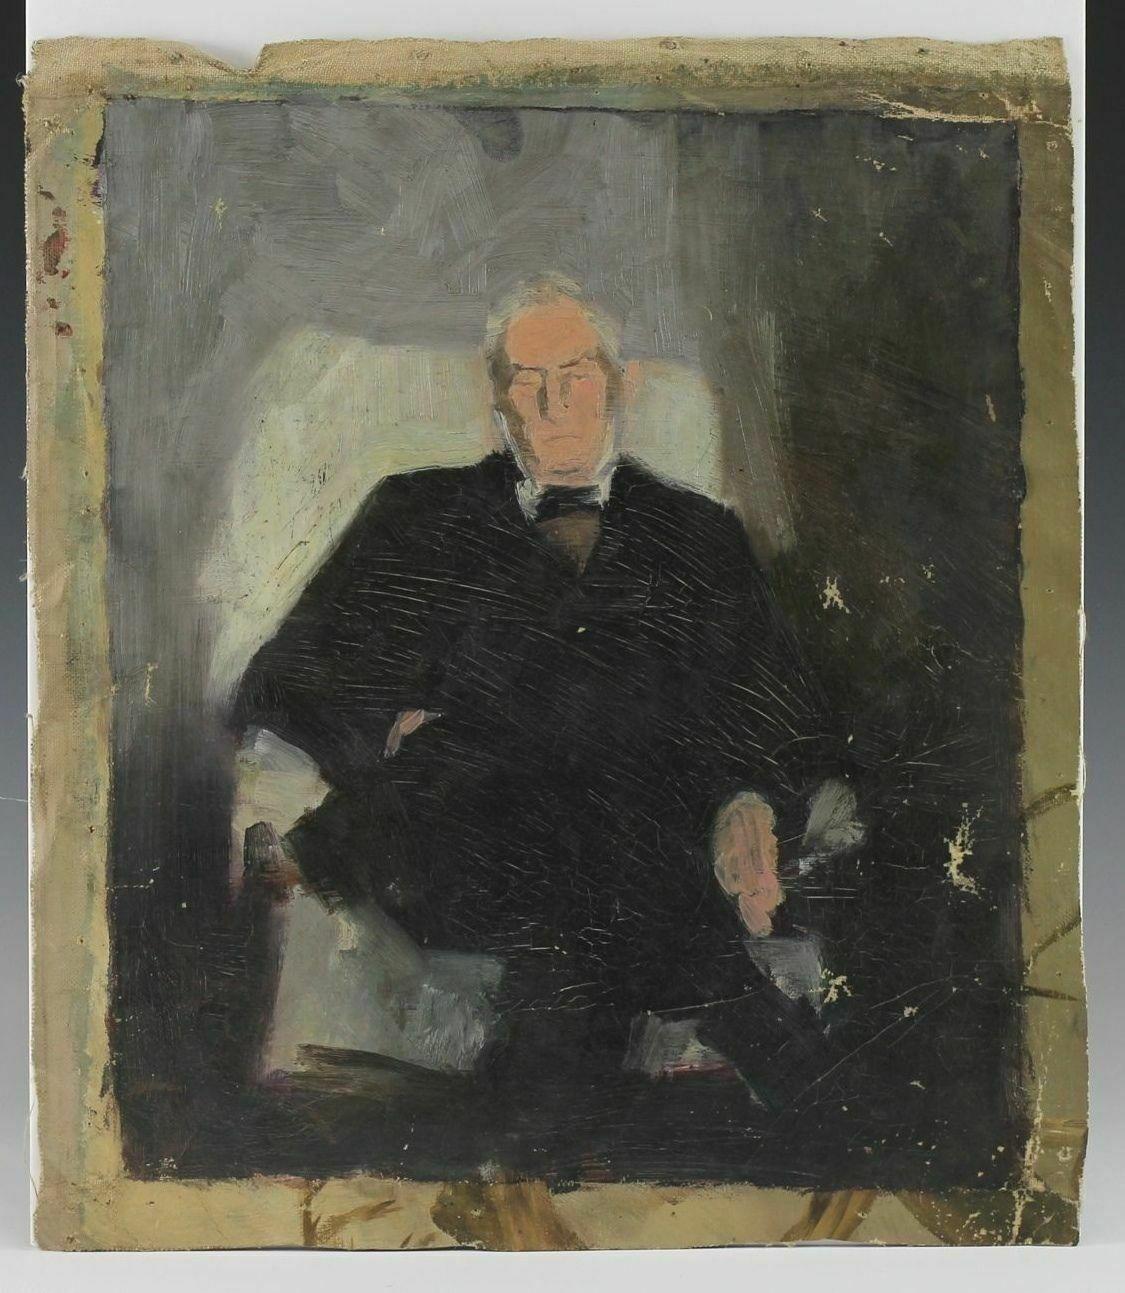 Alice Righter Edmiston, Öl auf Leinwand, Porträt eines sitzenden Mannes

Porträt eines sitzenden Mannes im schwarzen Anzug, unsigniert.

Zusätzliche Informationen:
Oberfläche der Malerei: Leinwand        
Merkmale: Unterzeichnet
Herkunftsregion: